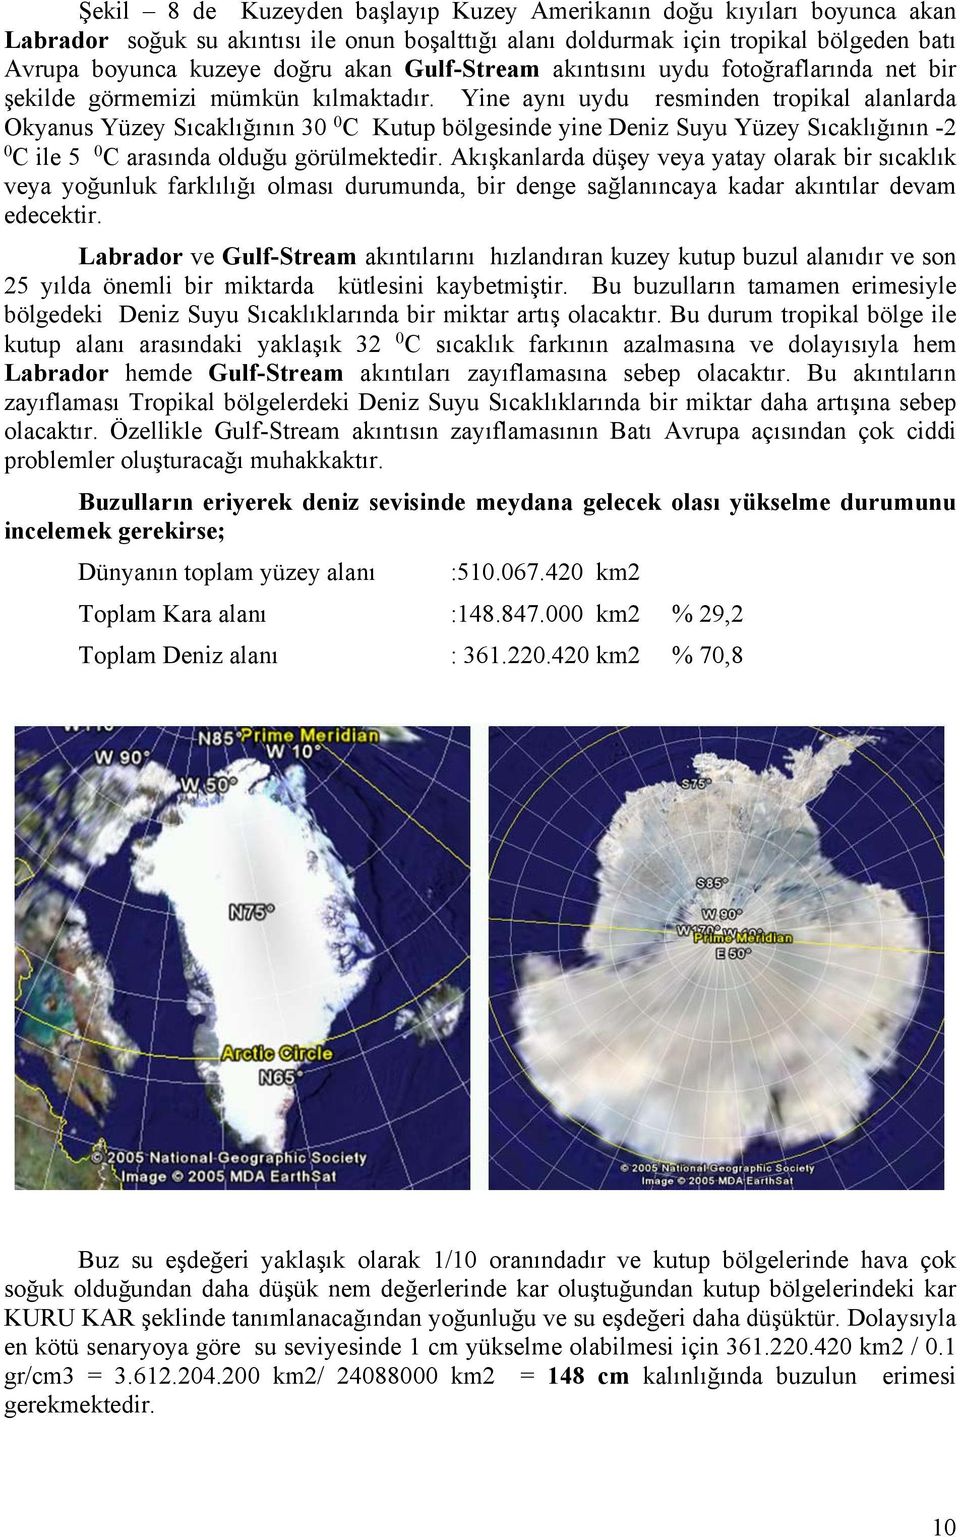 Yine aynı uydu resminden tropikal alanlarda Okyanus Yüzey Sıcaklığının 30 0 C Kutup bölgesinde yine Deniz Suyu Yüzey Sıcaklığının -2 0 C ile 5 0 C arasında olduğu görülmektedir.